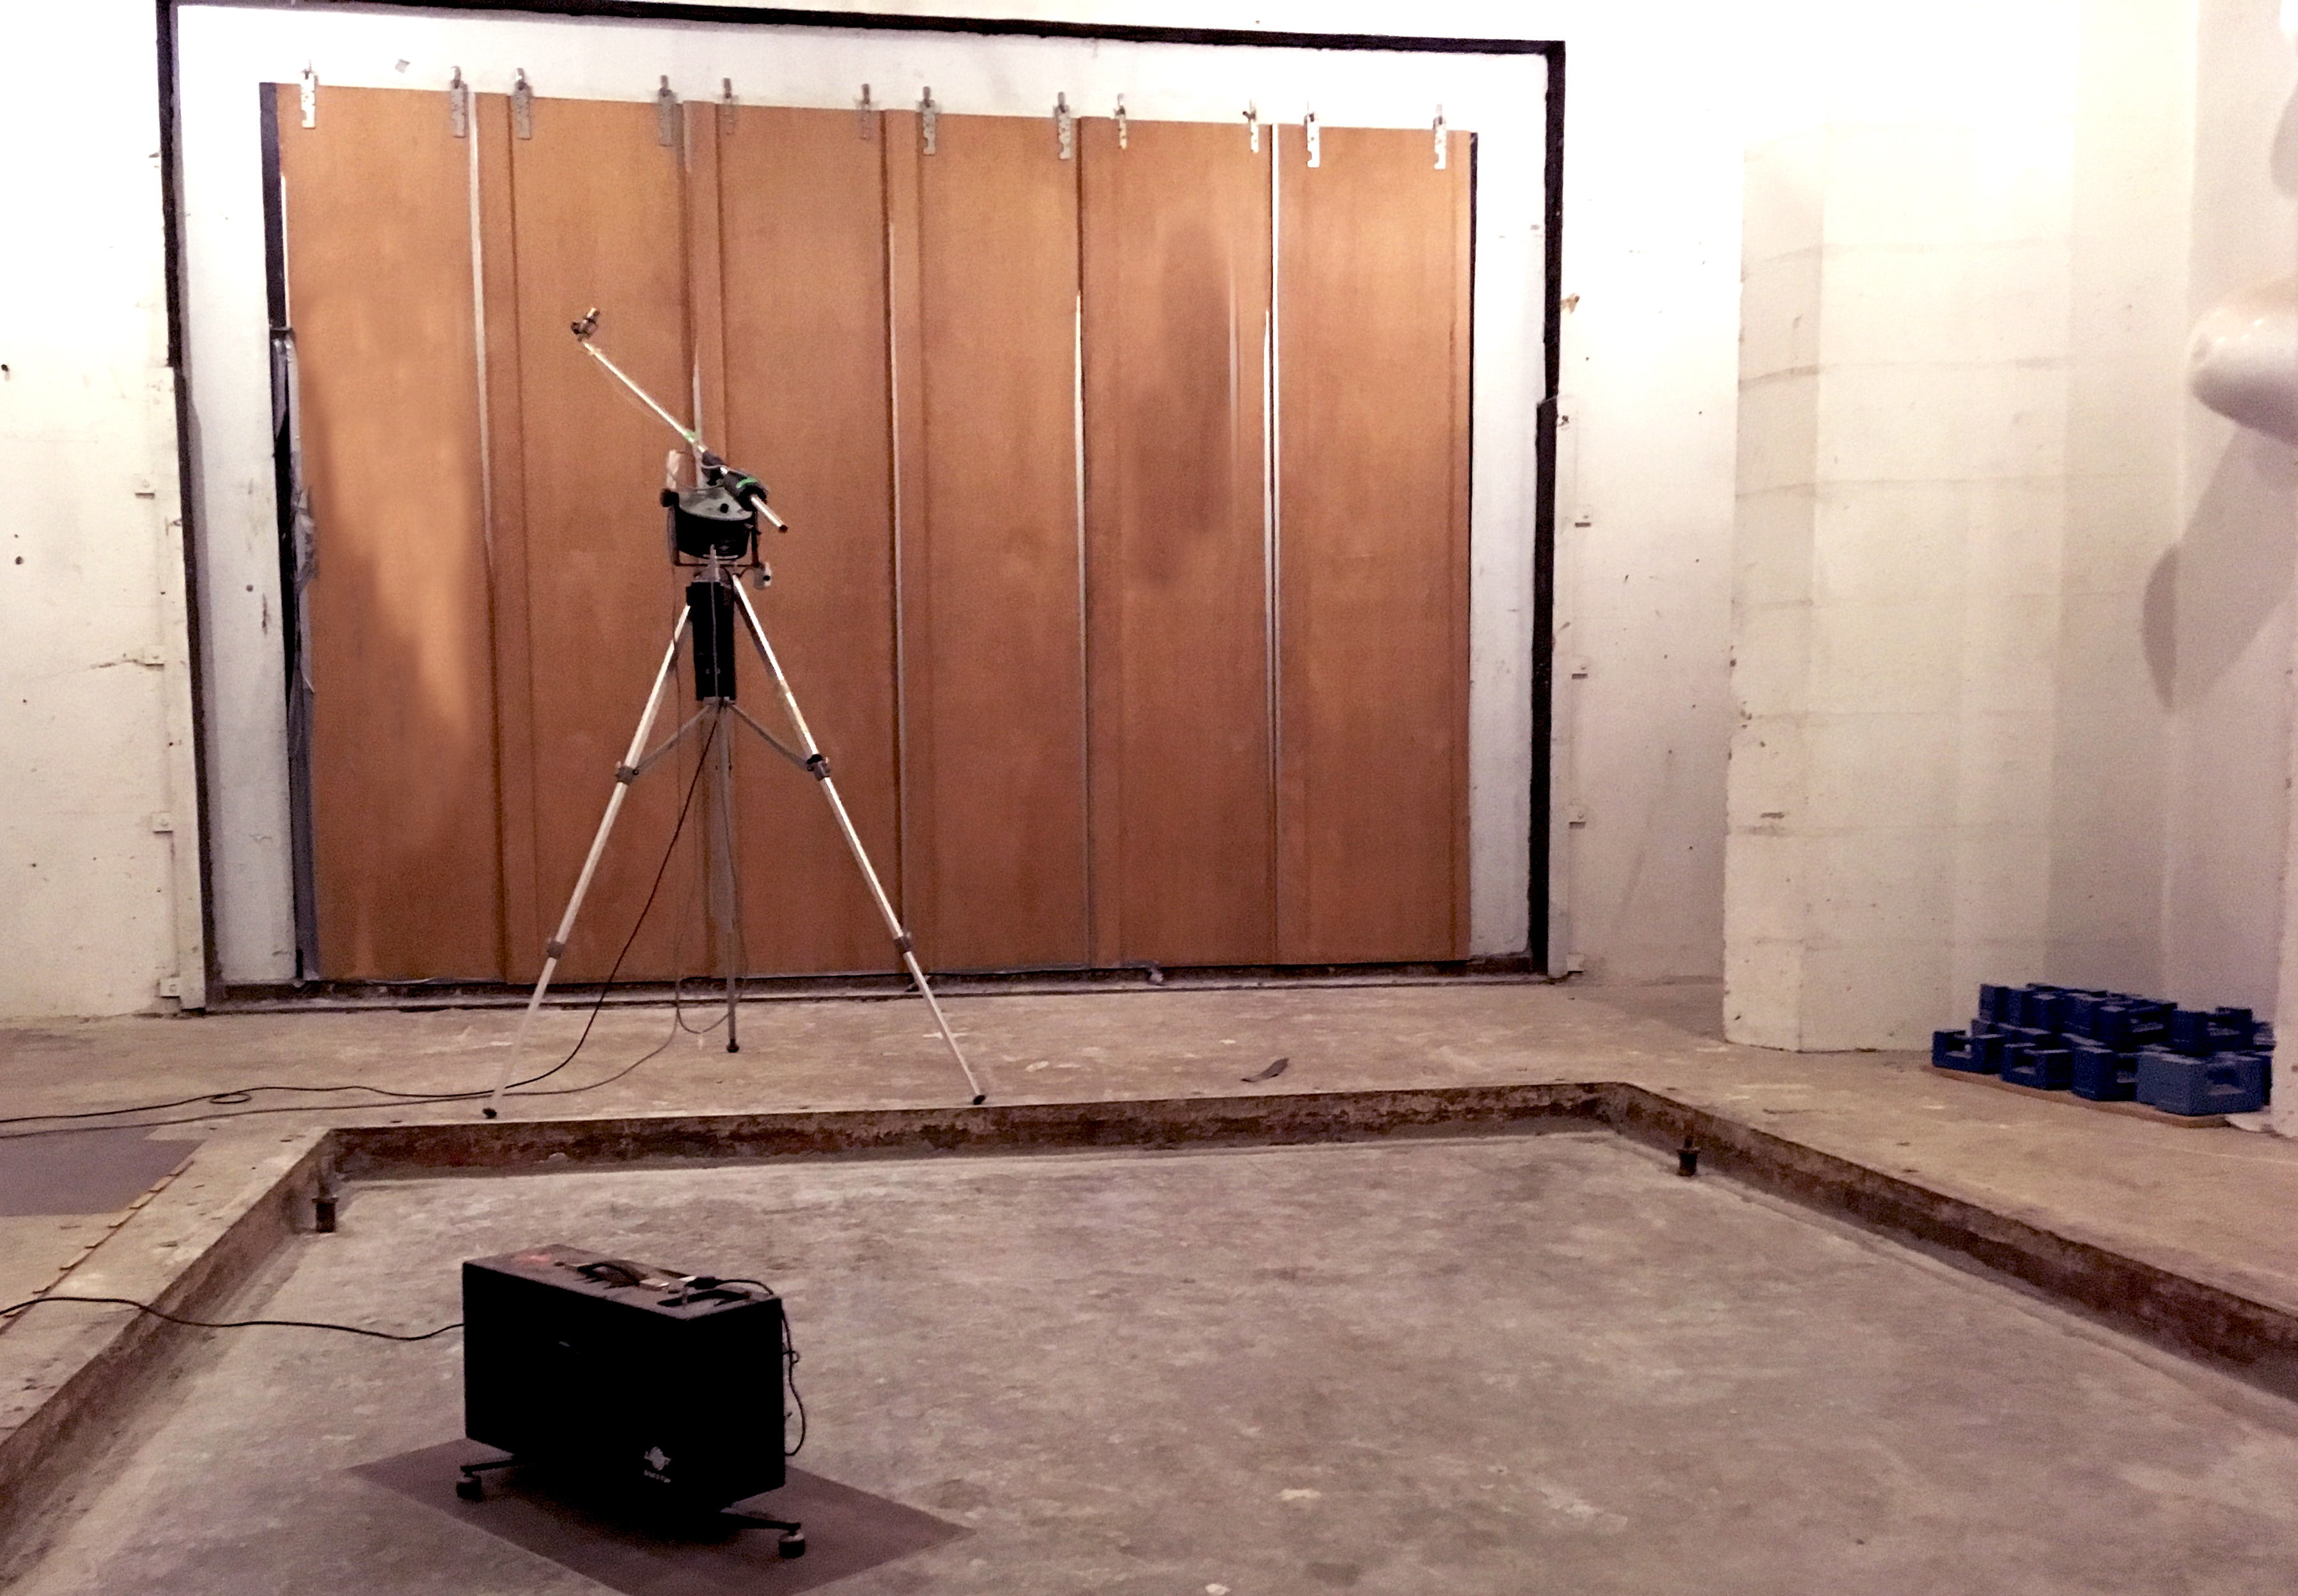 Måling af trinlydniveau af betondæk i måleåbning til test af dækkonstruktioner i bygningsakustisk maalelaboratorium.